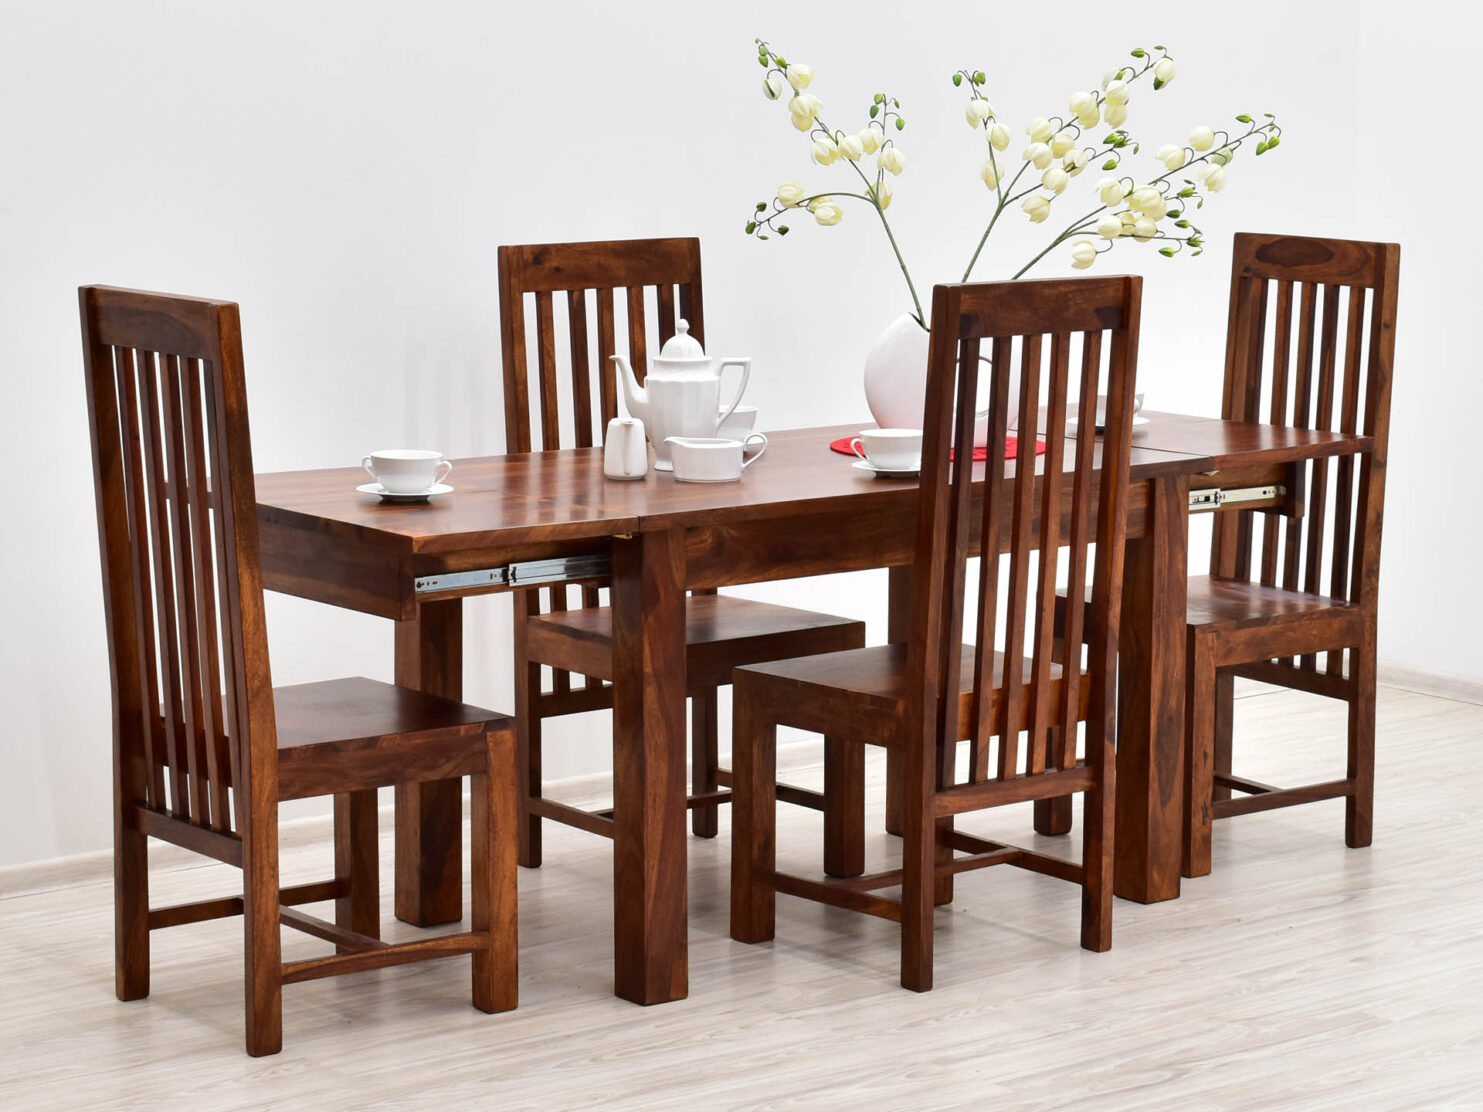 komplet-obiadowy-kolonialny-stol-rozkladany-4-krzesla-lite-drewno-palisander-miodowy-braz